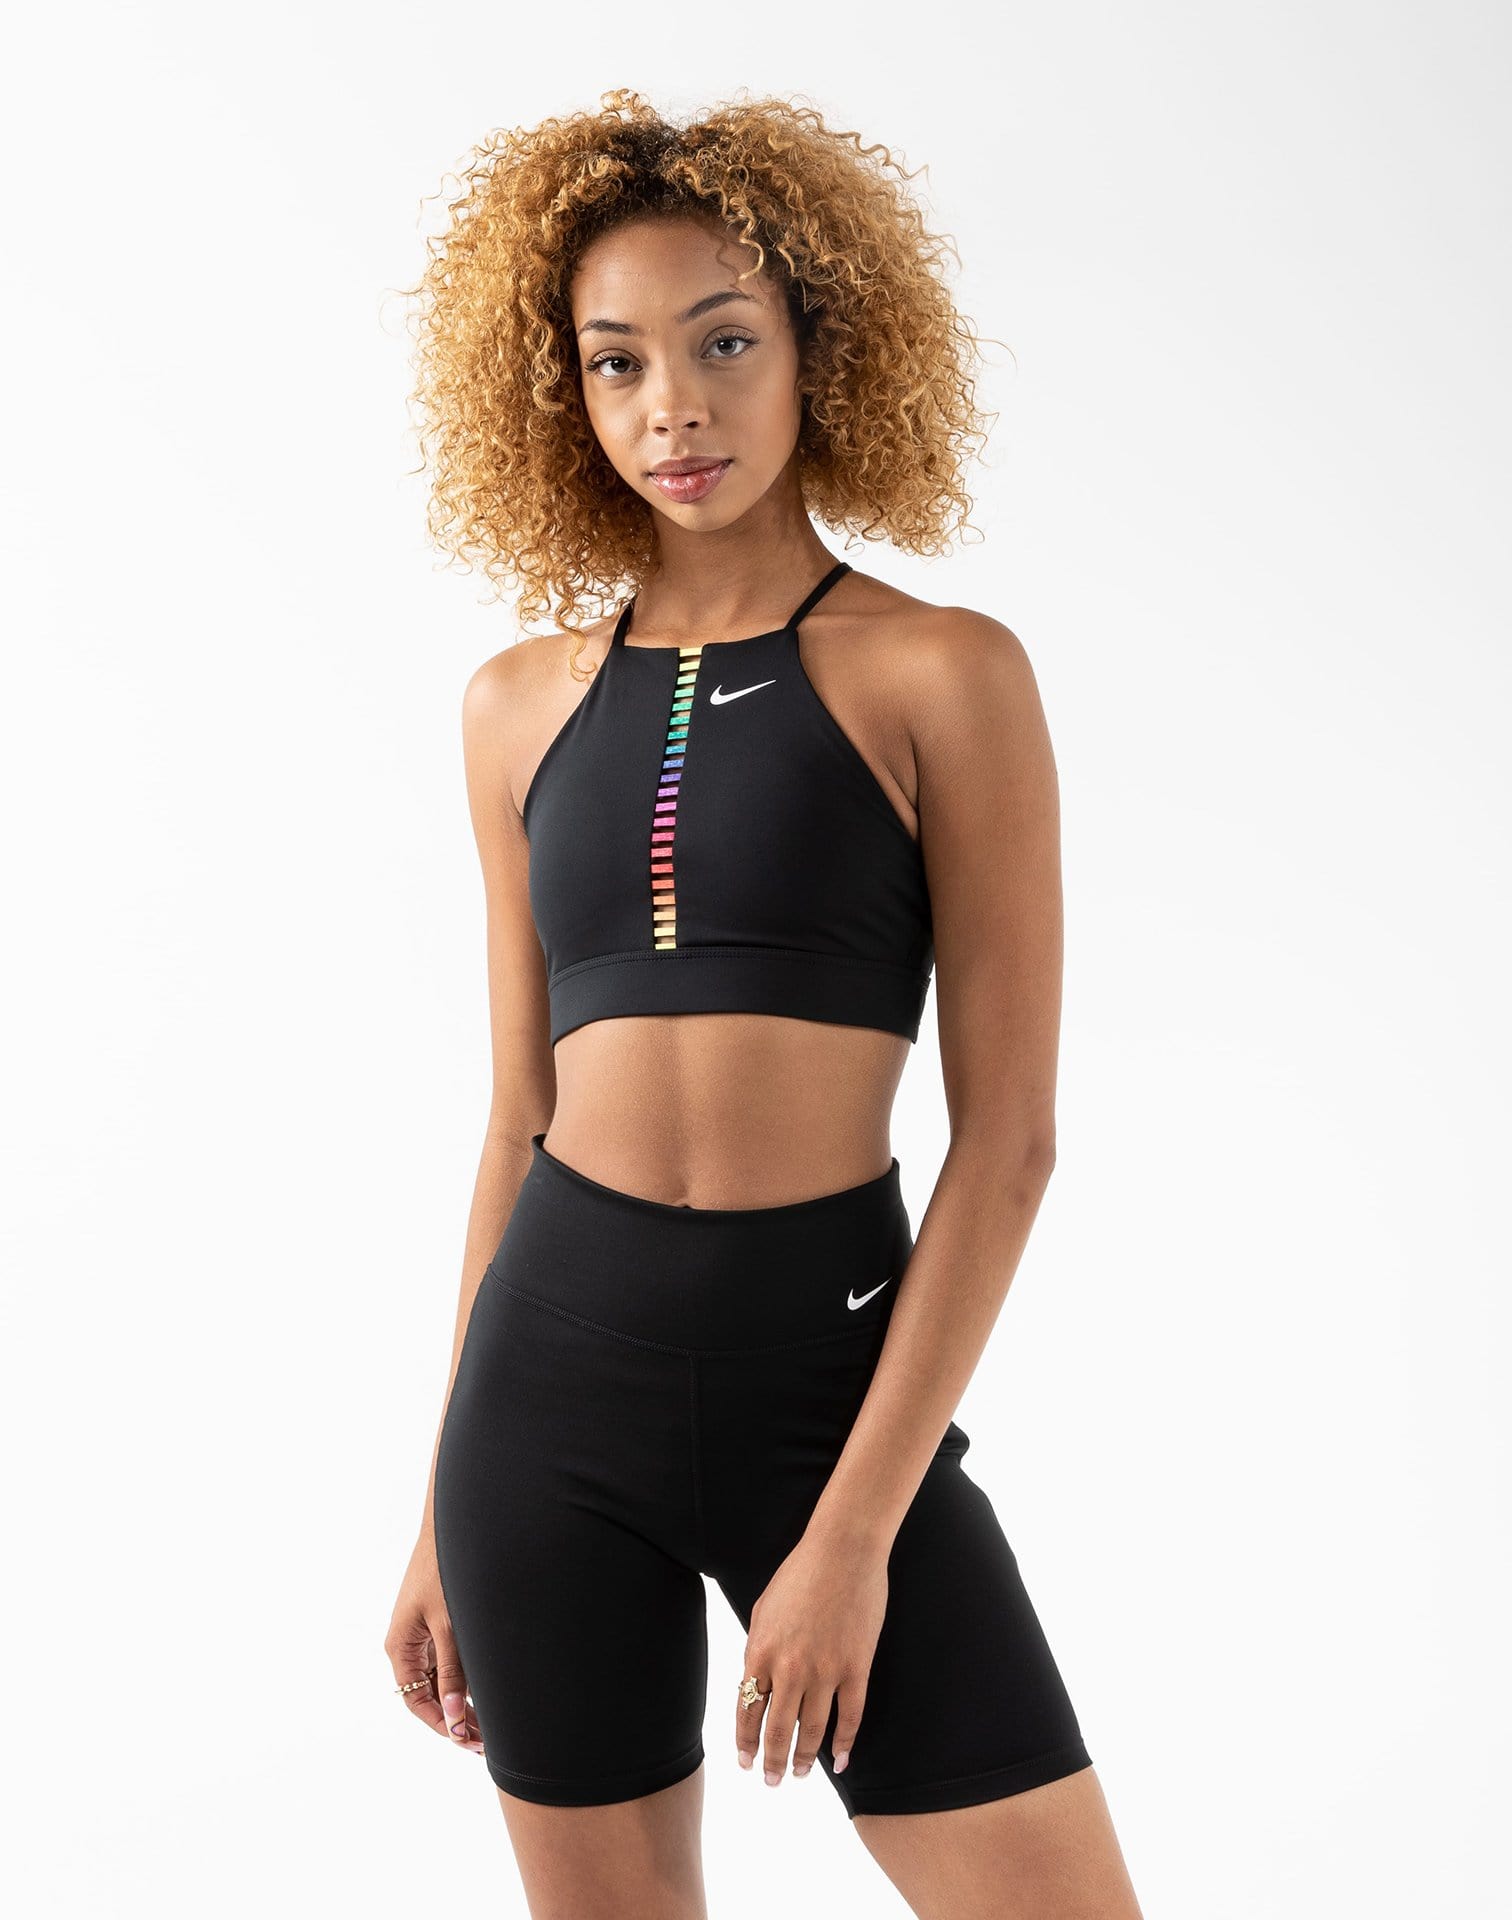 Nike Multicolor Sports Bras for Women